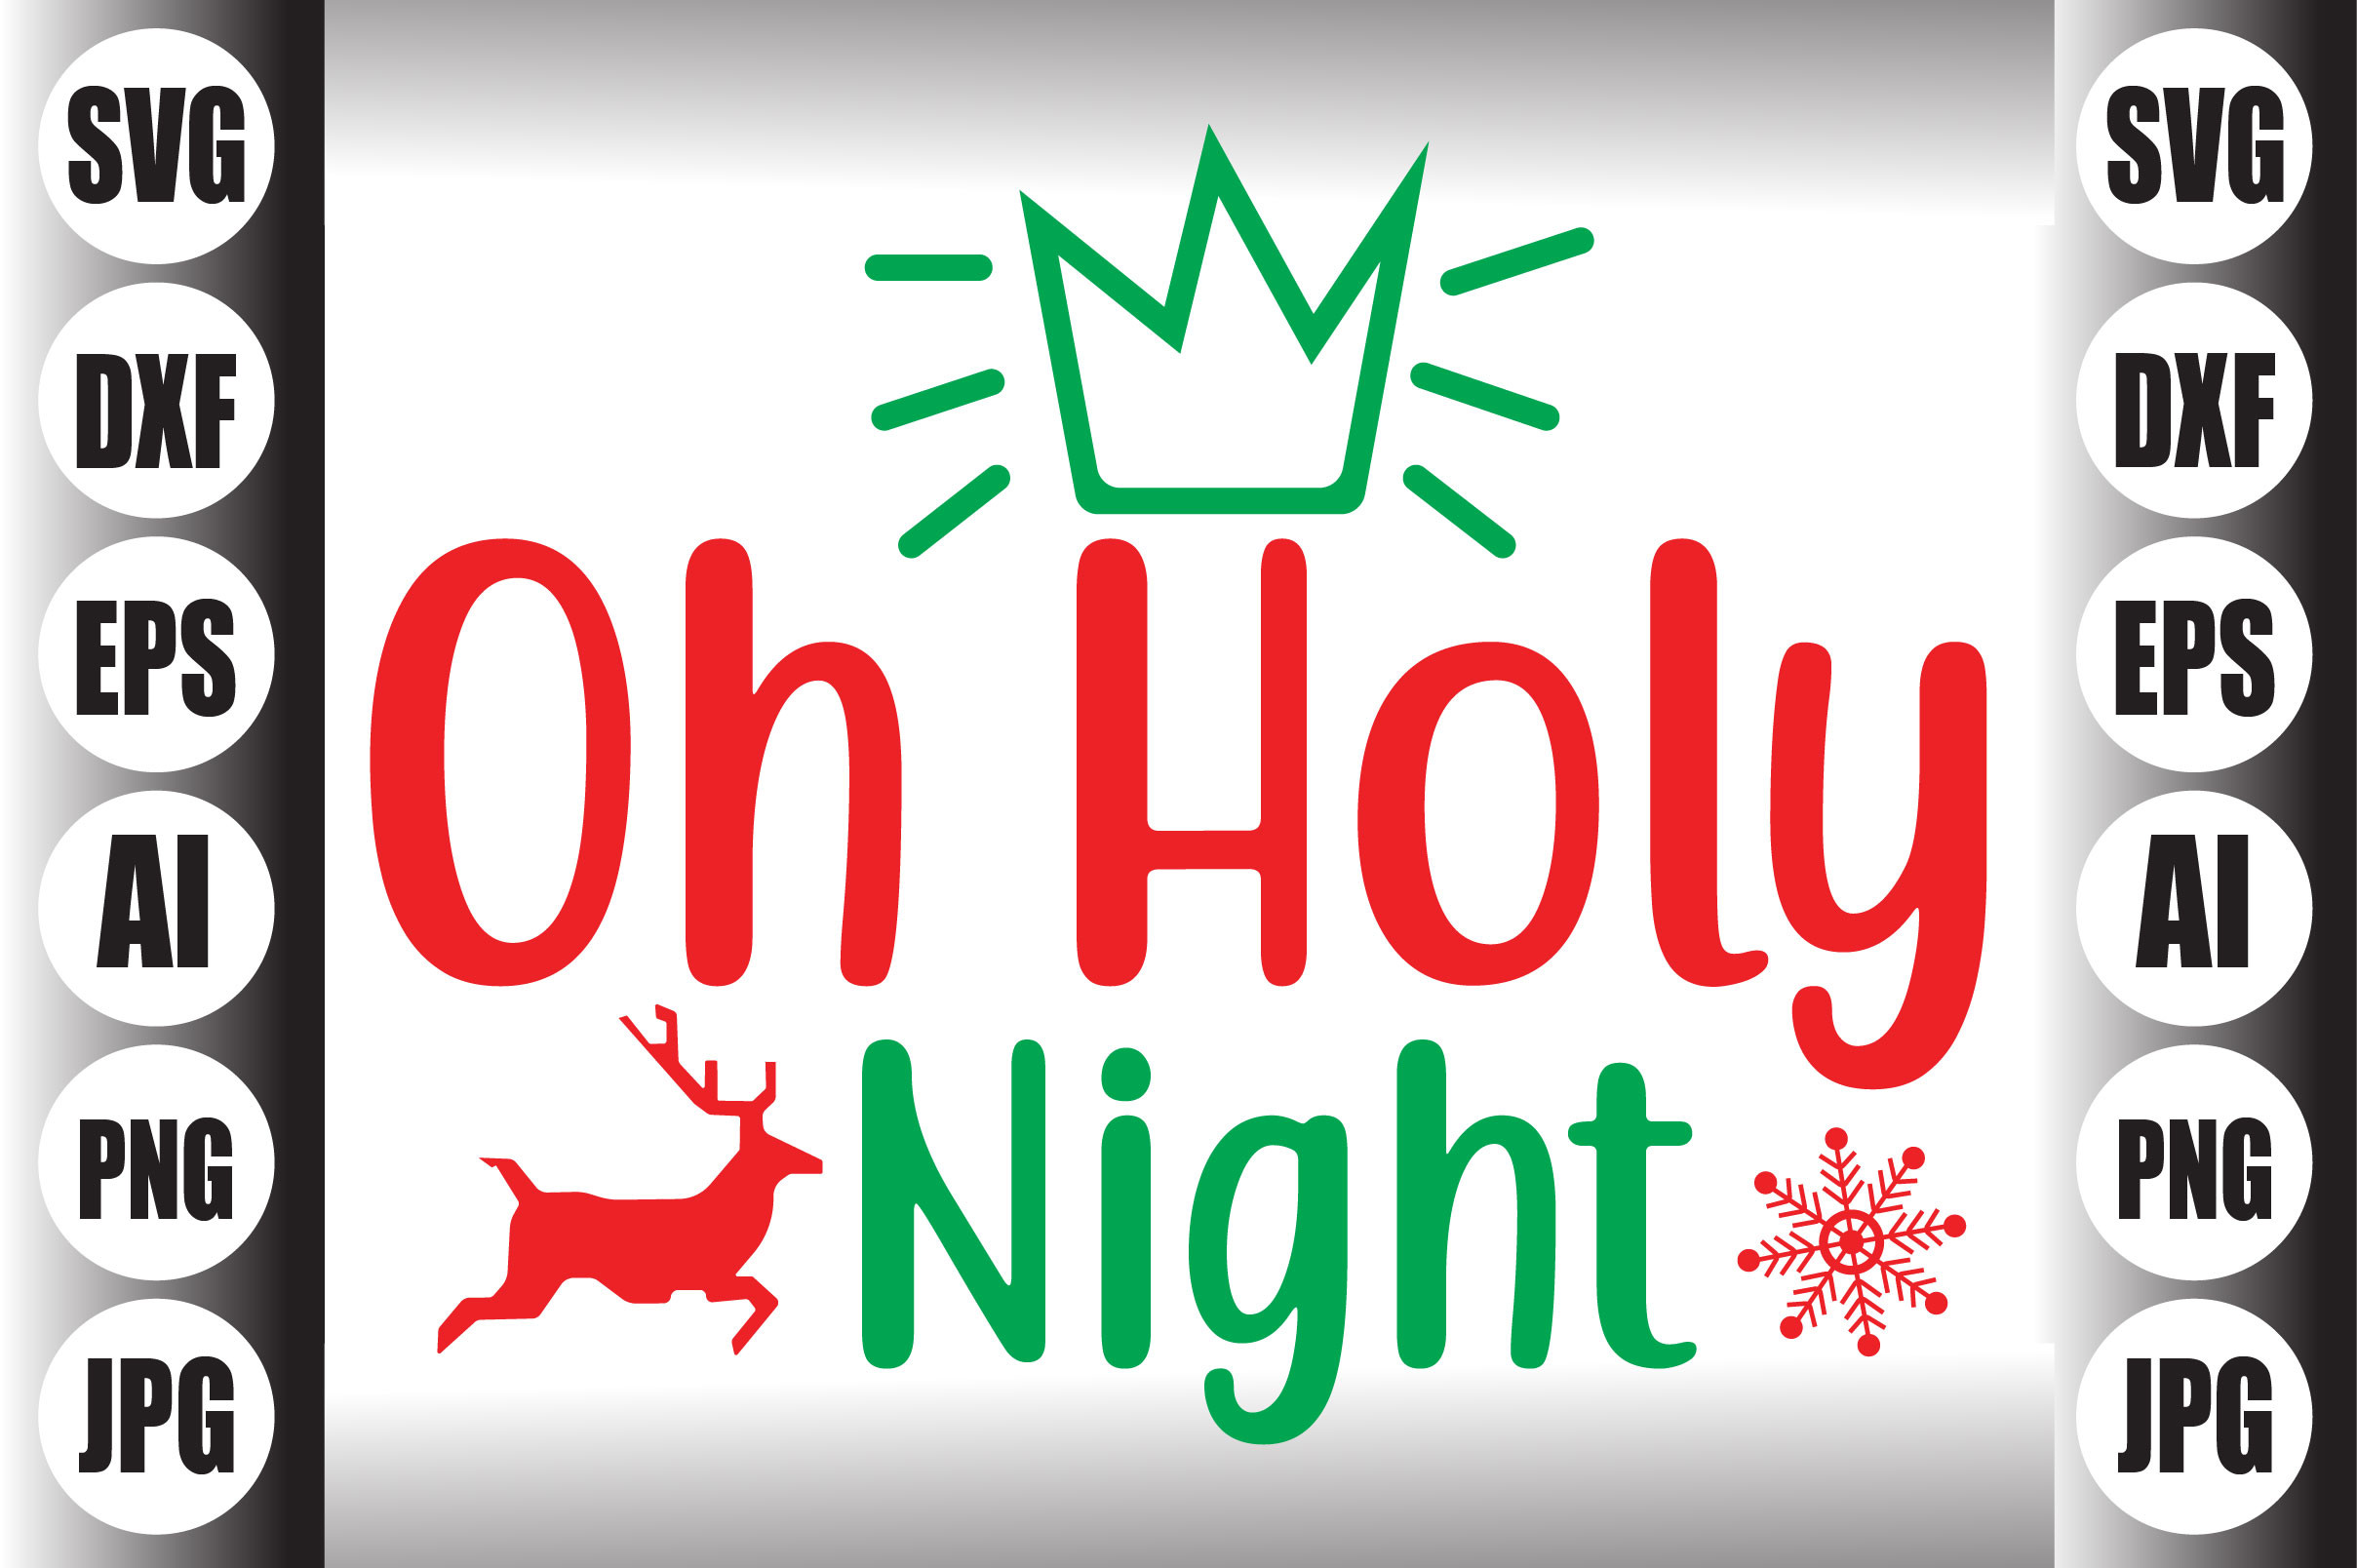 O Holy Night Christmas Home Décor Plaque - Creative Fabrica